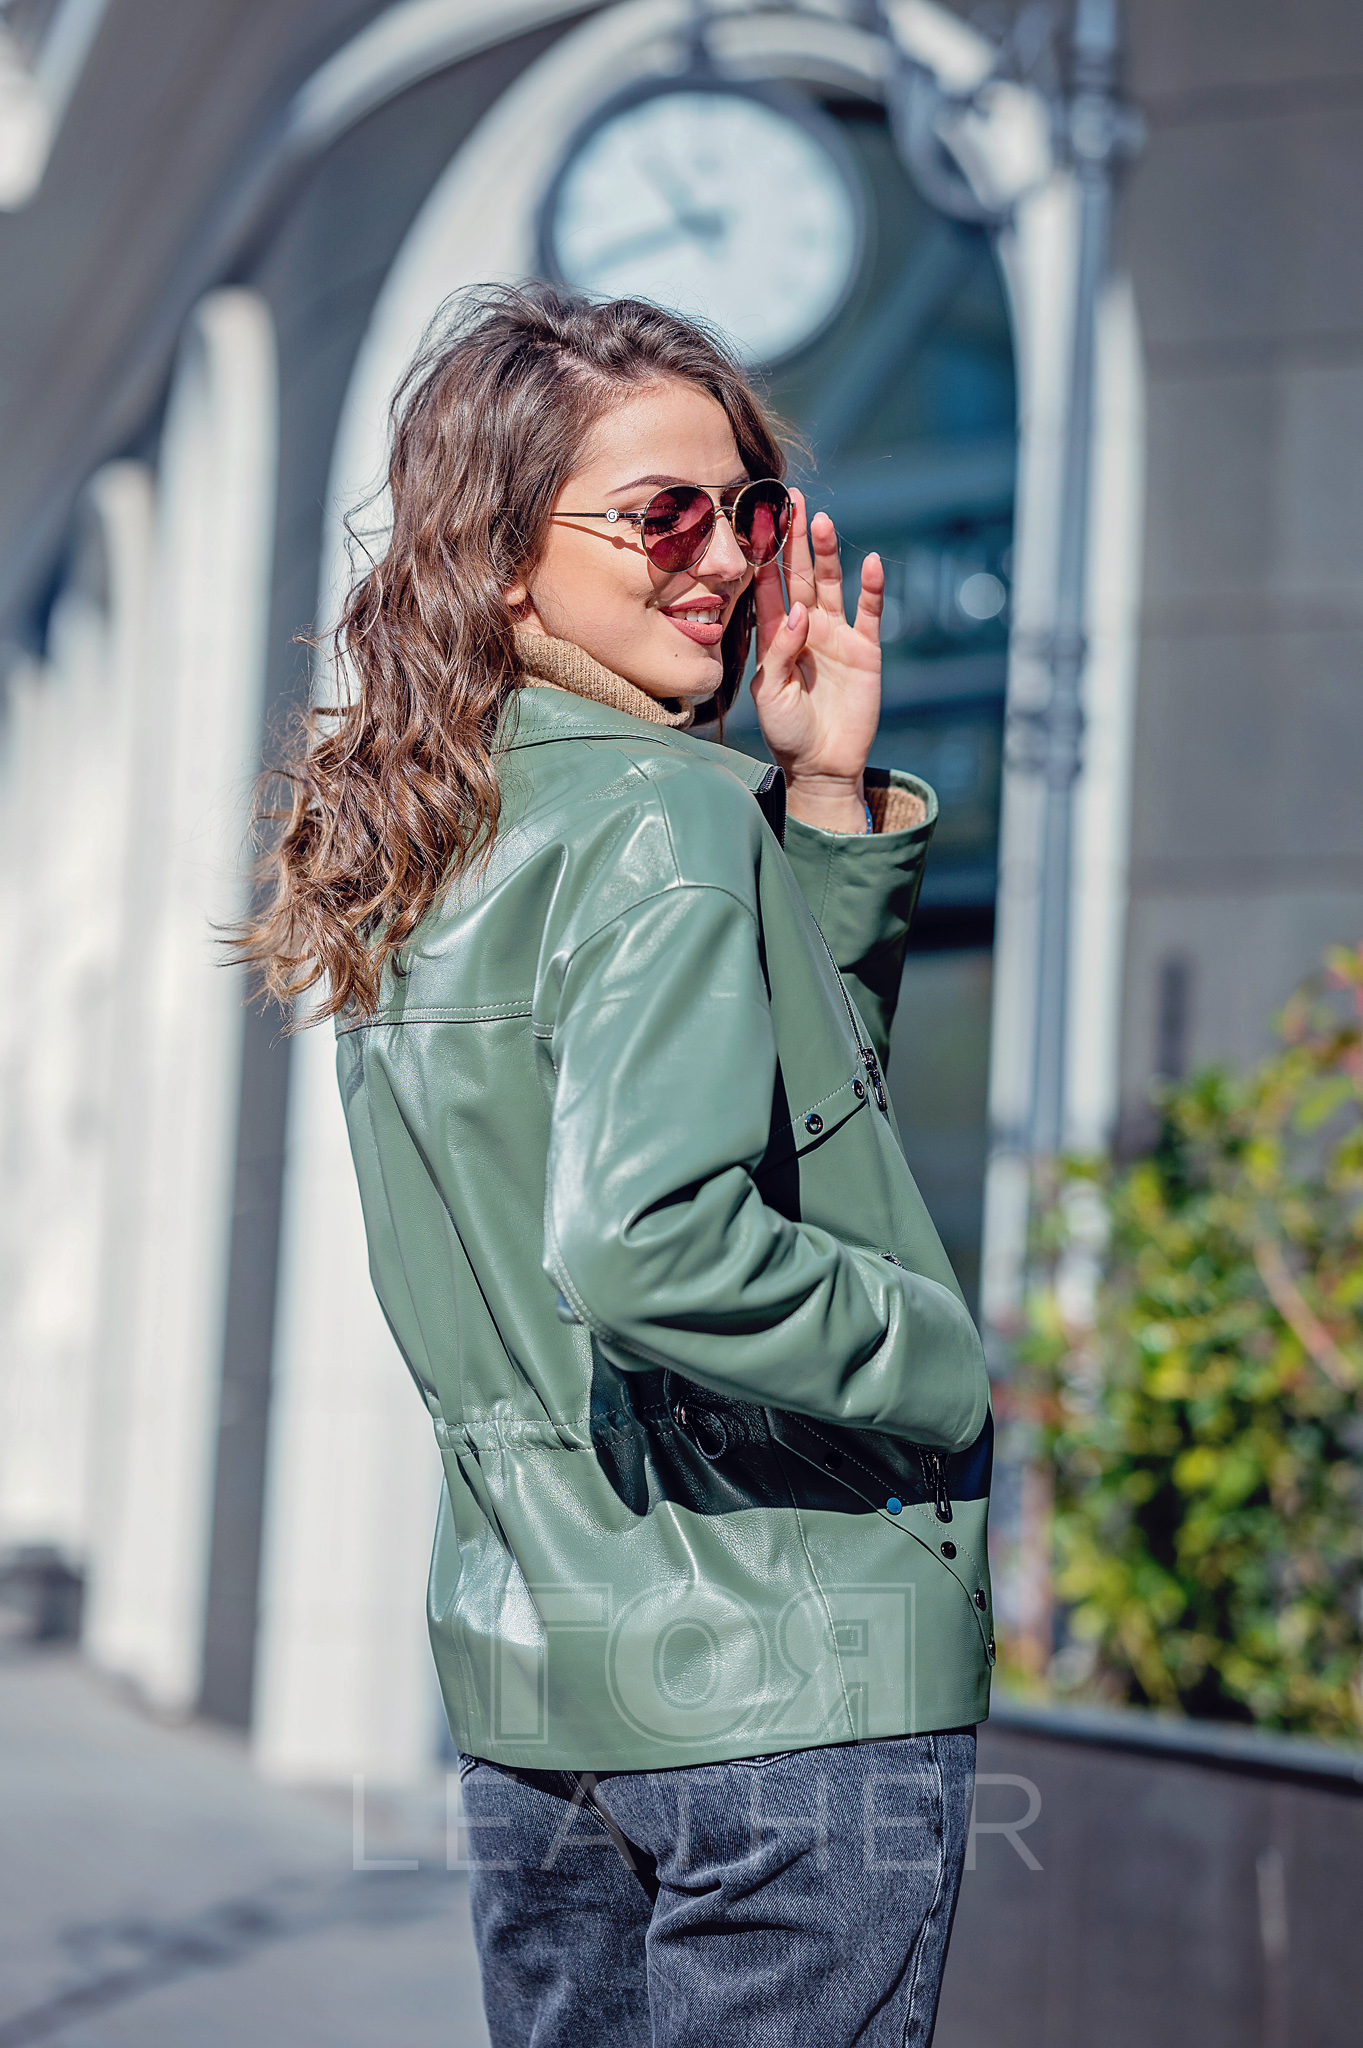 Дамско кожено яке Анита от Гоя Leather. Нов модел колекция 2022 г. Изработен от 100% естествена кожа- агнешка напа. Удобна кройка в стил овърсайз, подходящо за сезон пролет-есен.